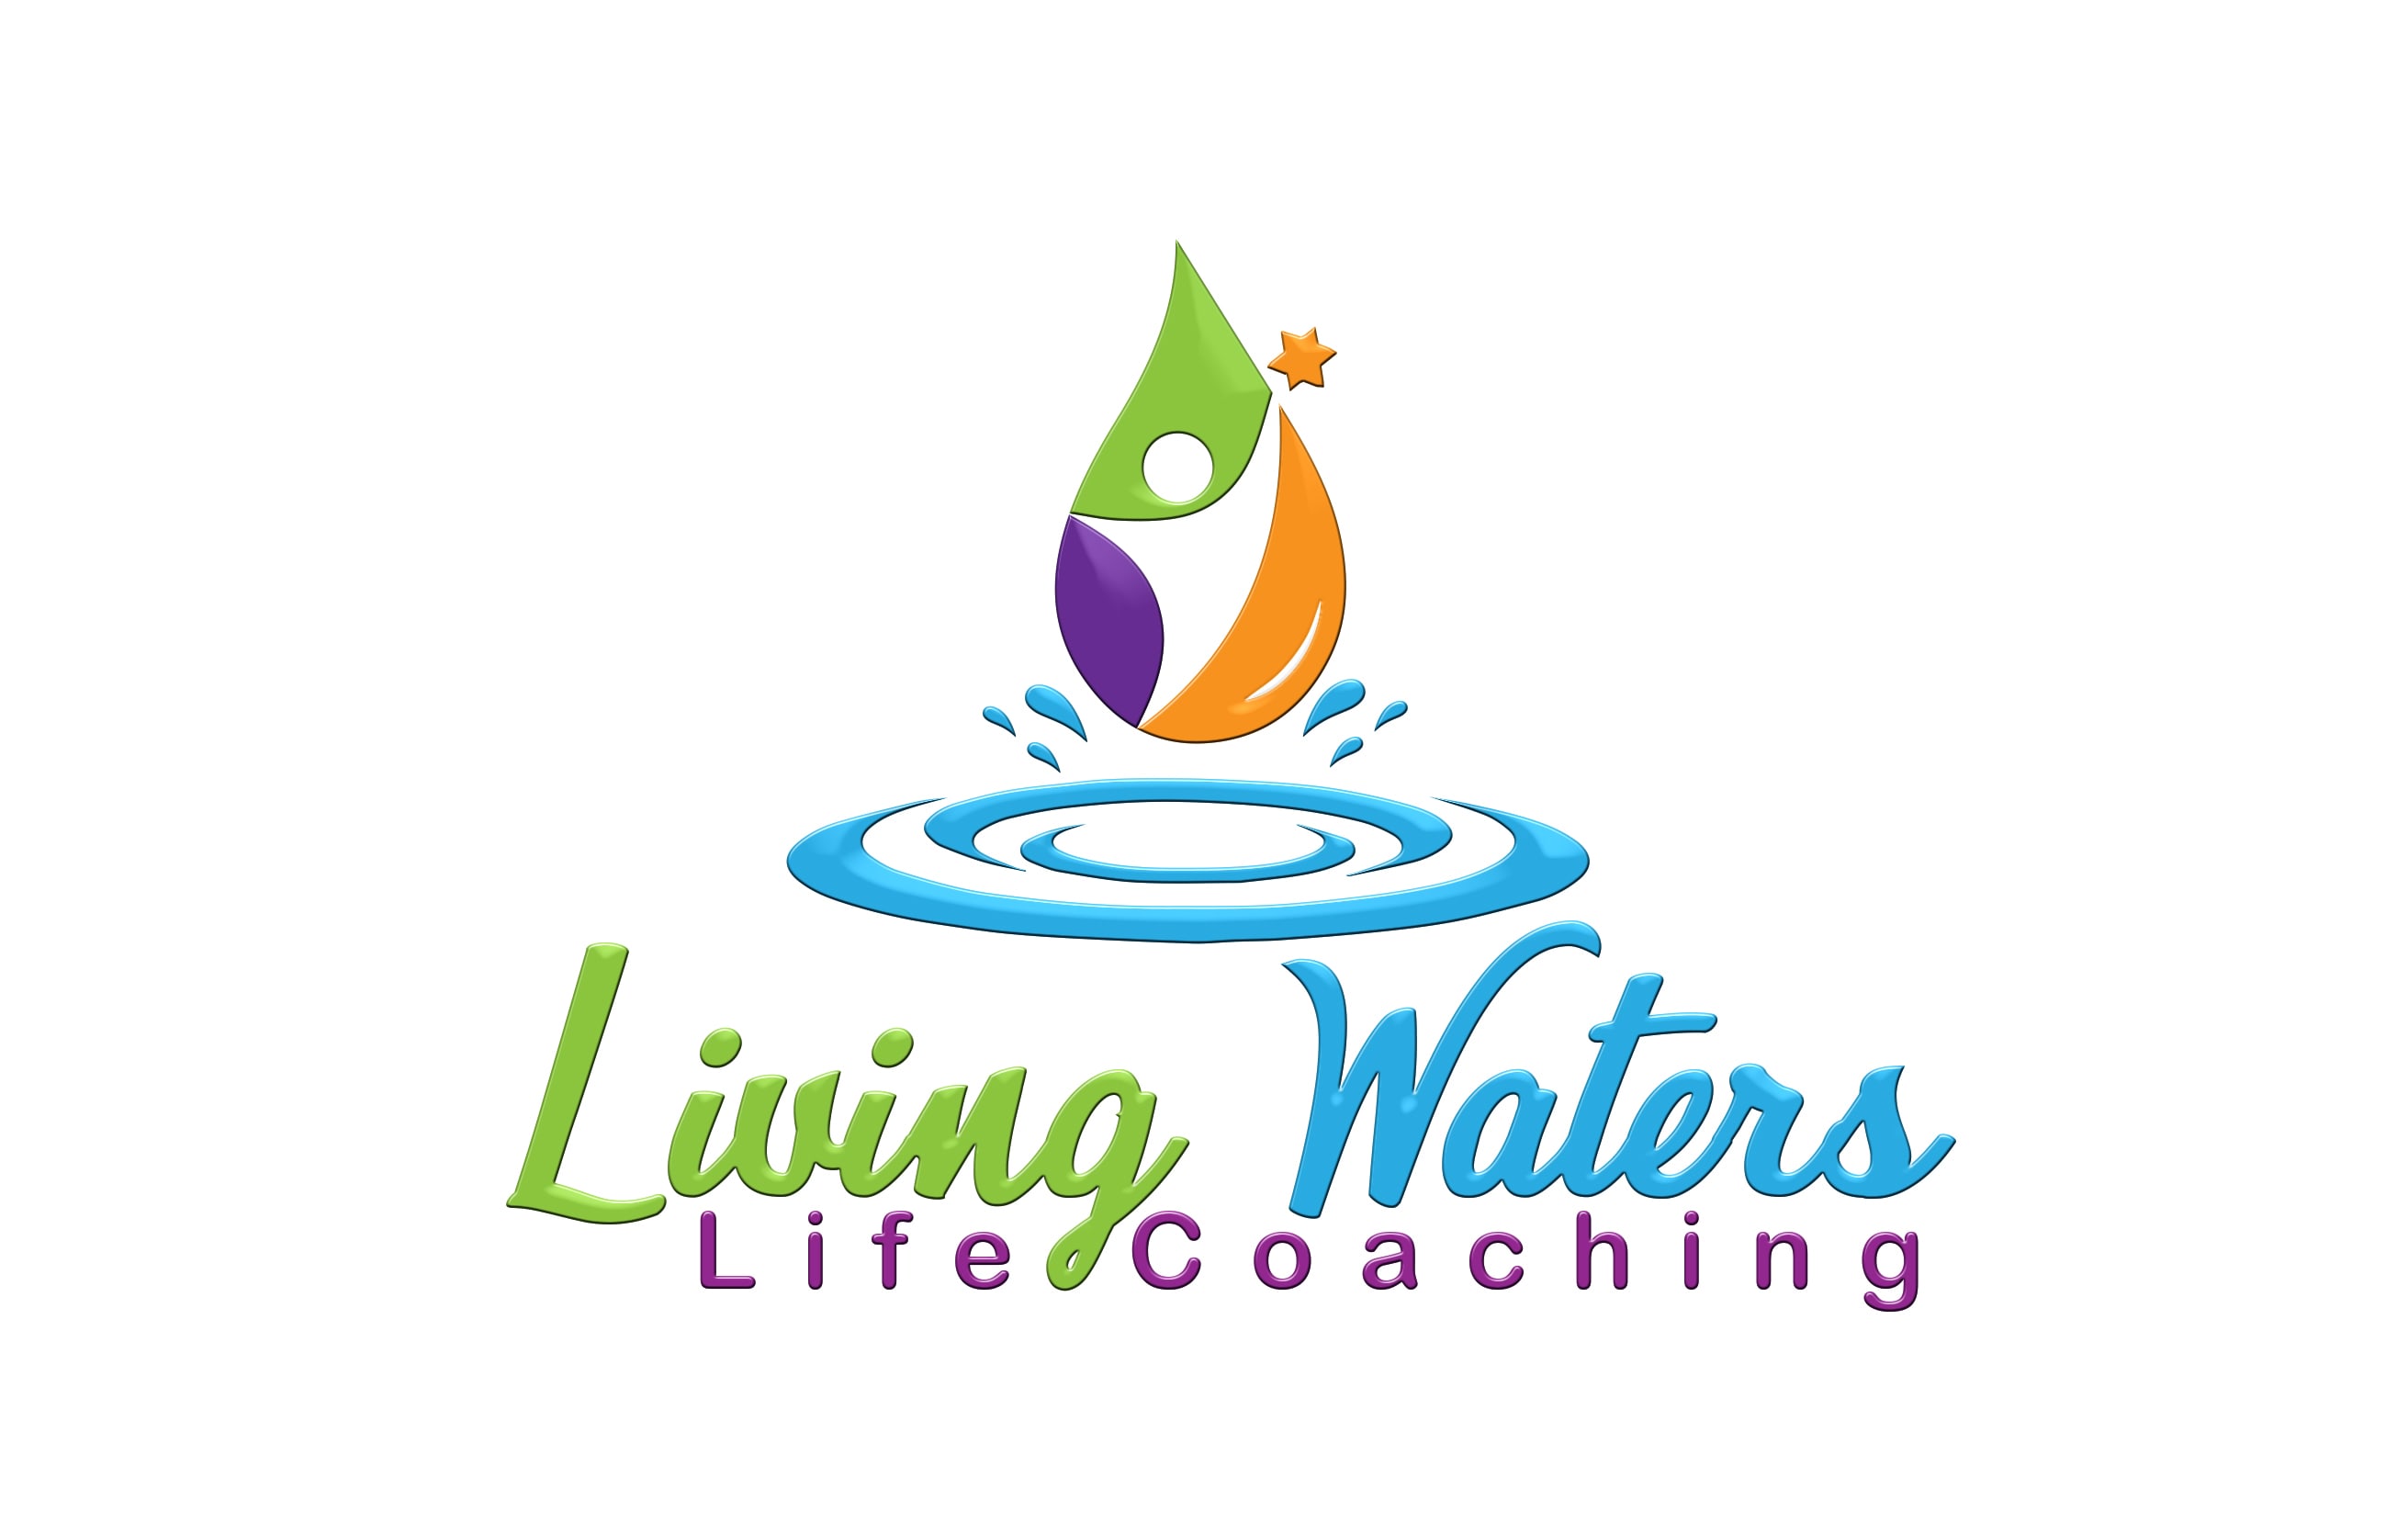 Living Waters Life Coaching